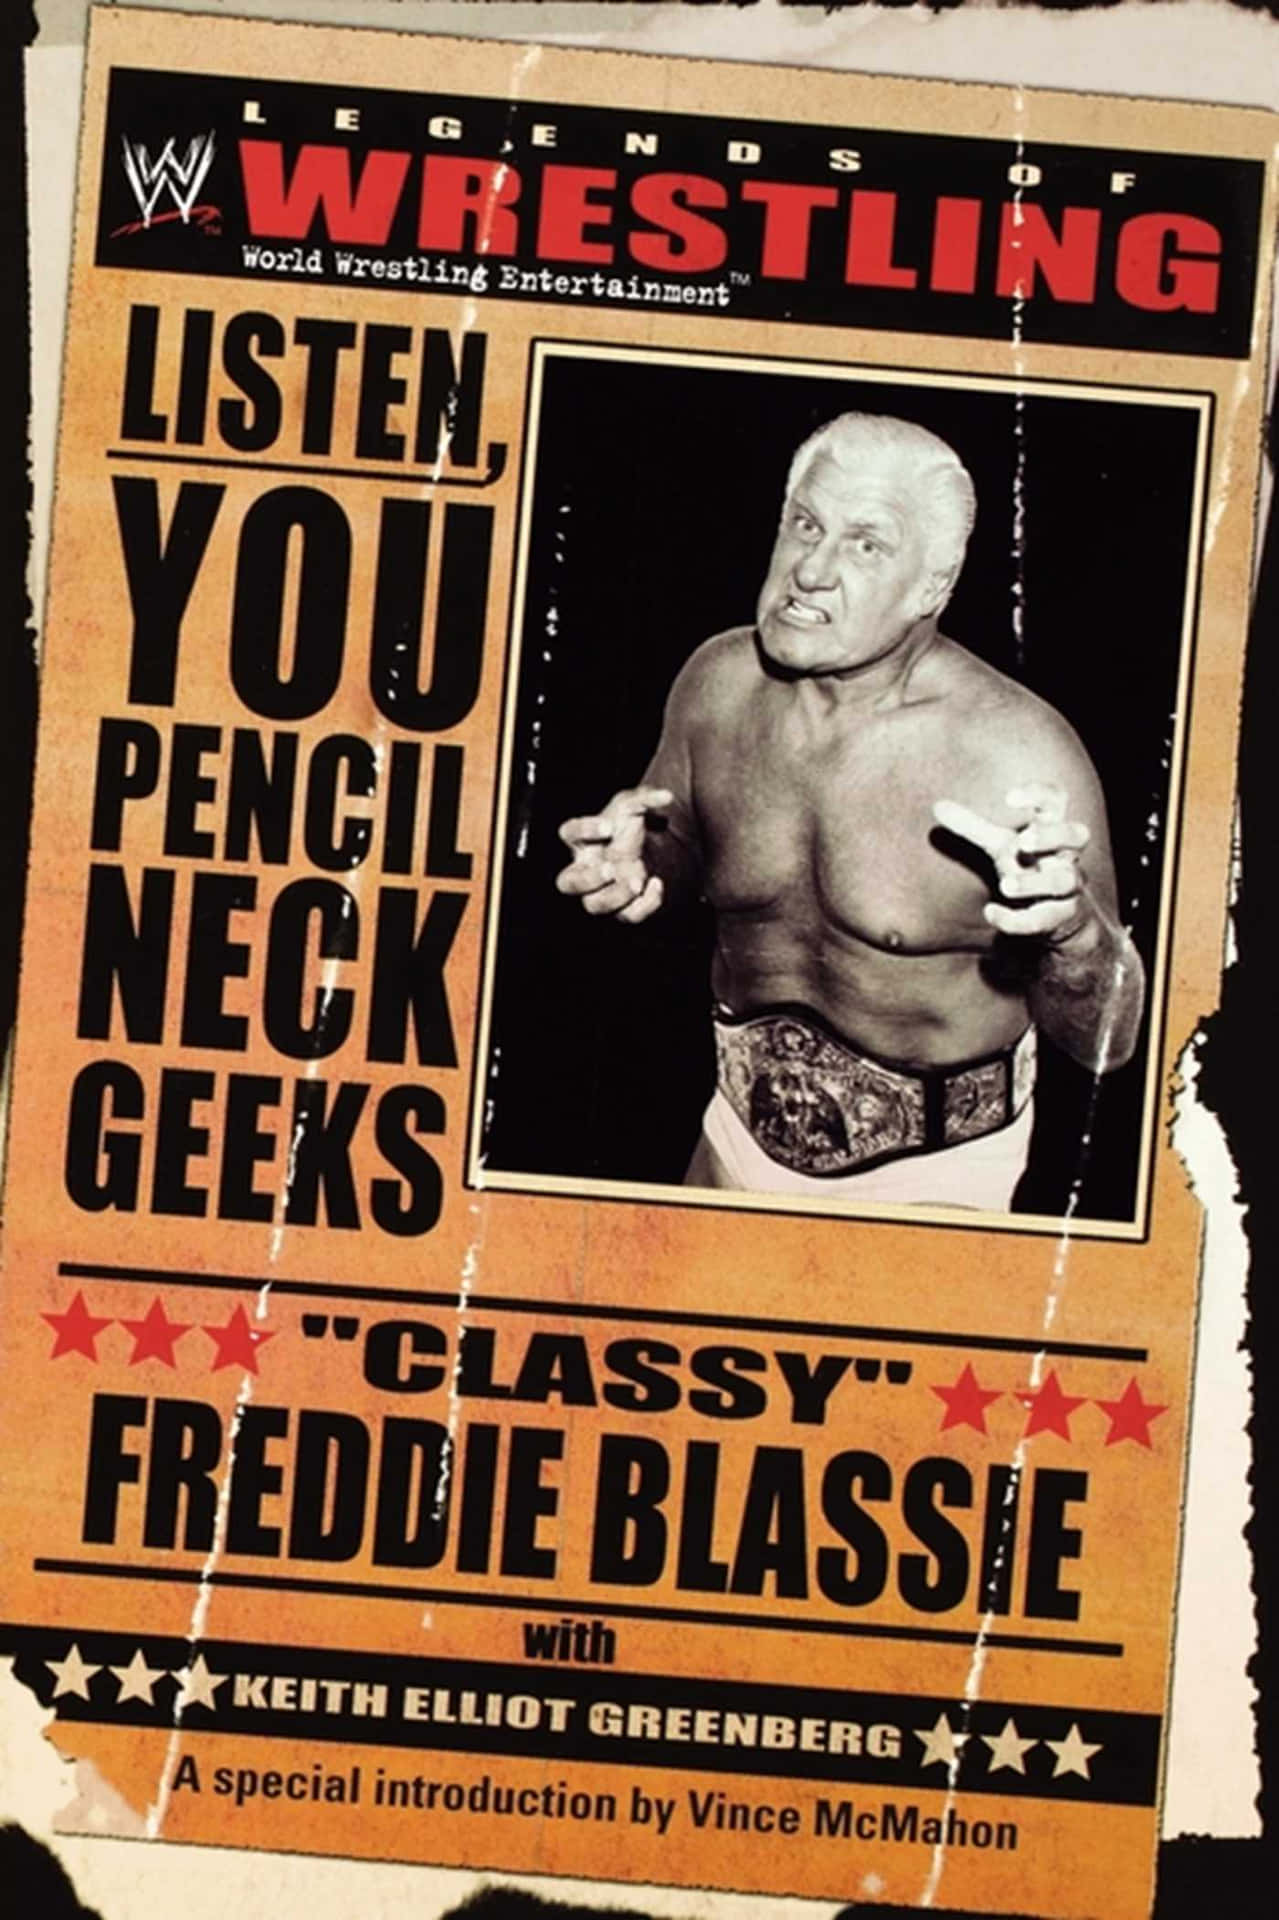 "Legendary Professional Wrestler, Classy Freddie Blassie in a Vintage Magazine Spread" Wallpaper